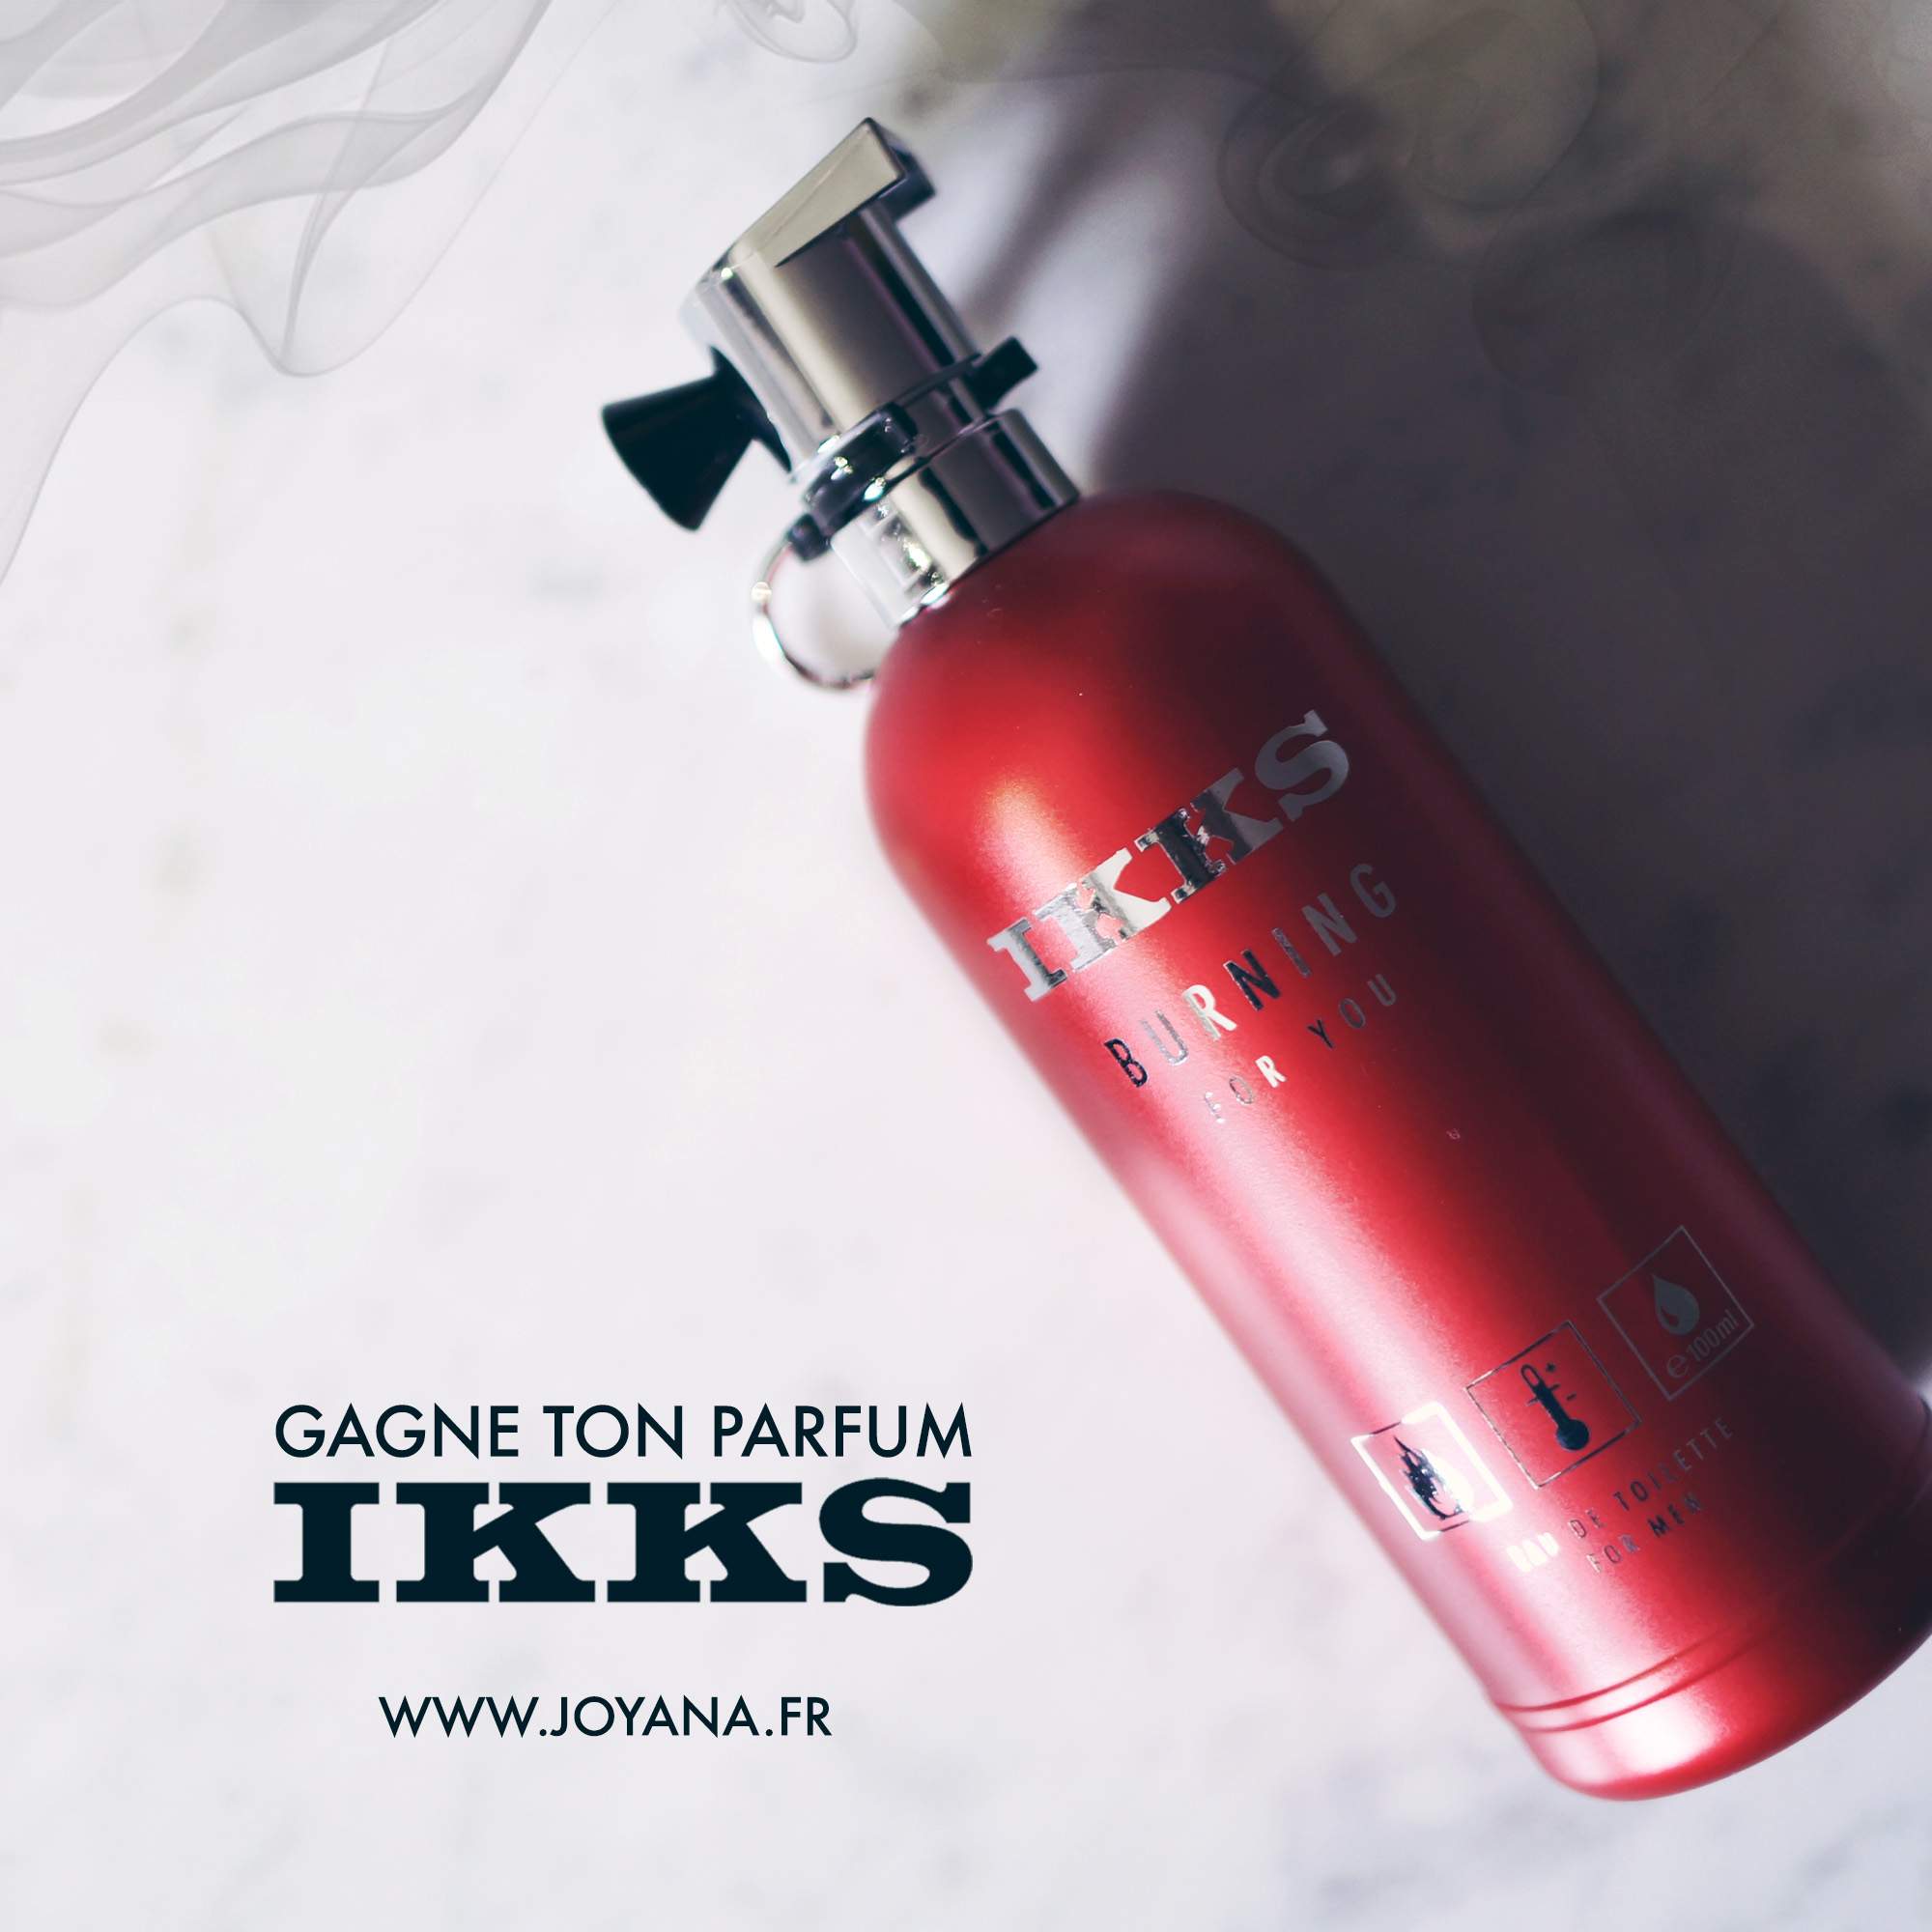 IKKS – Burning For You